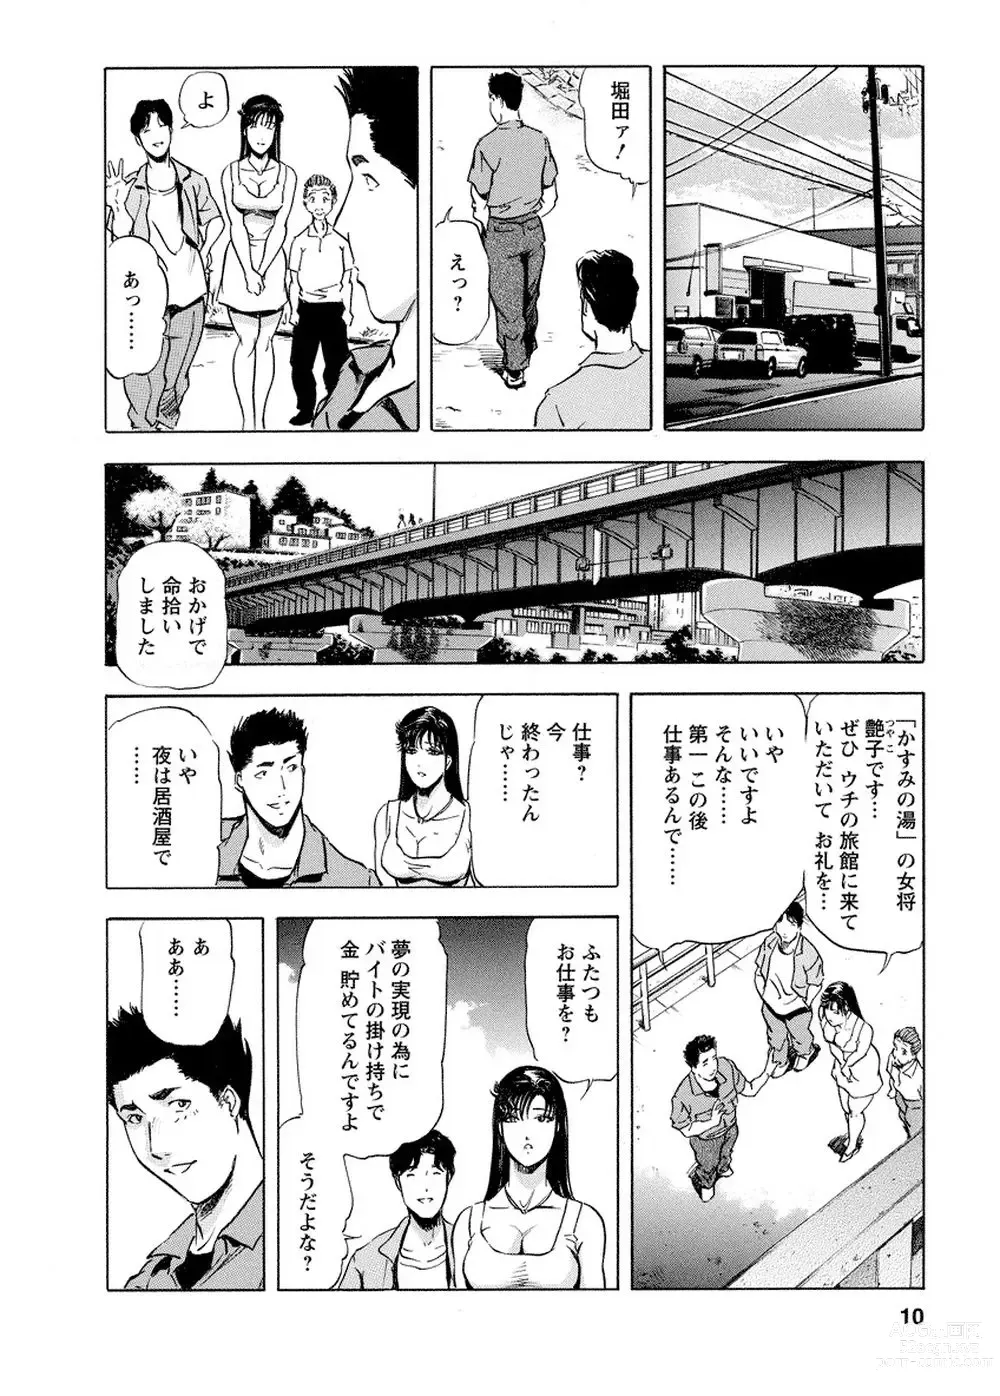 Page 9 of manga Tsuyako no Yu Vol.4